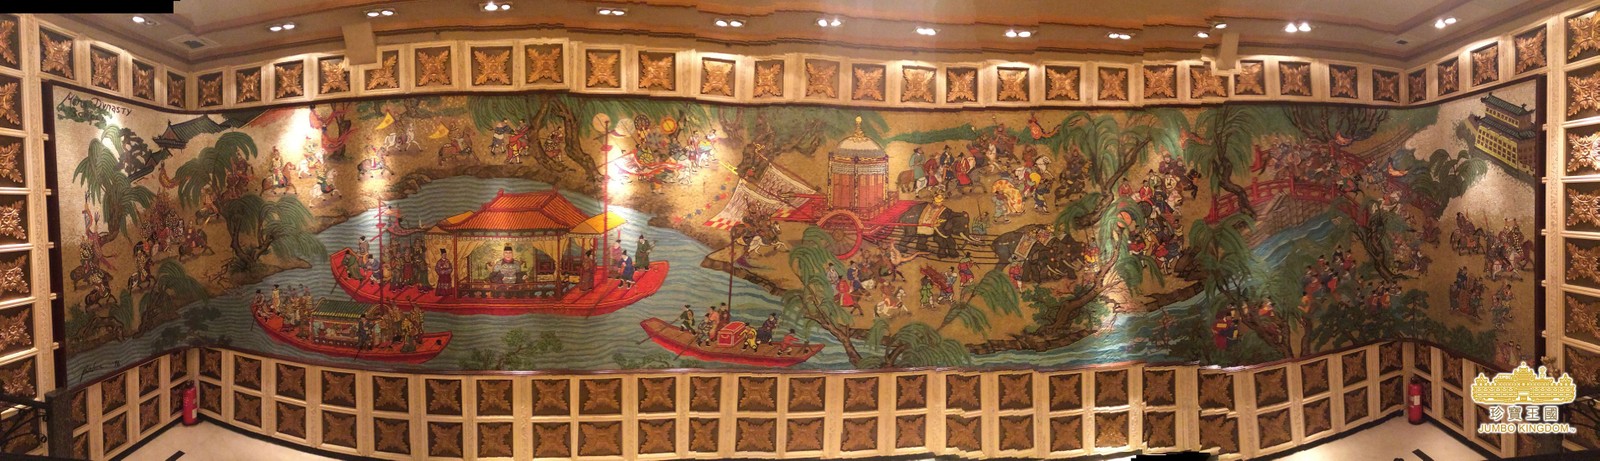 Jumbo: imagem mostra painel que decorava restaurante flutuante de 76 metros — Foto: Divulgação